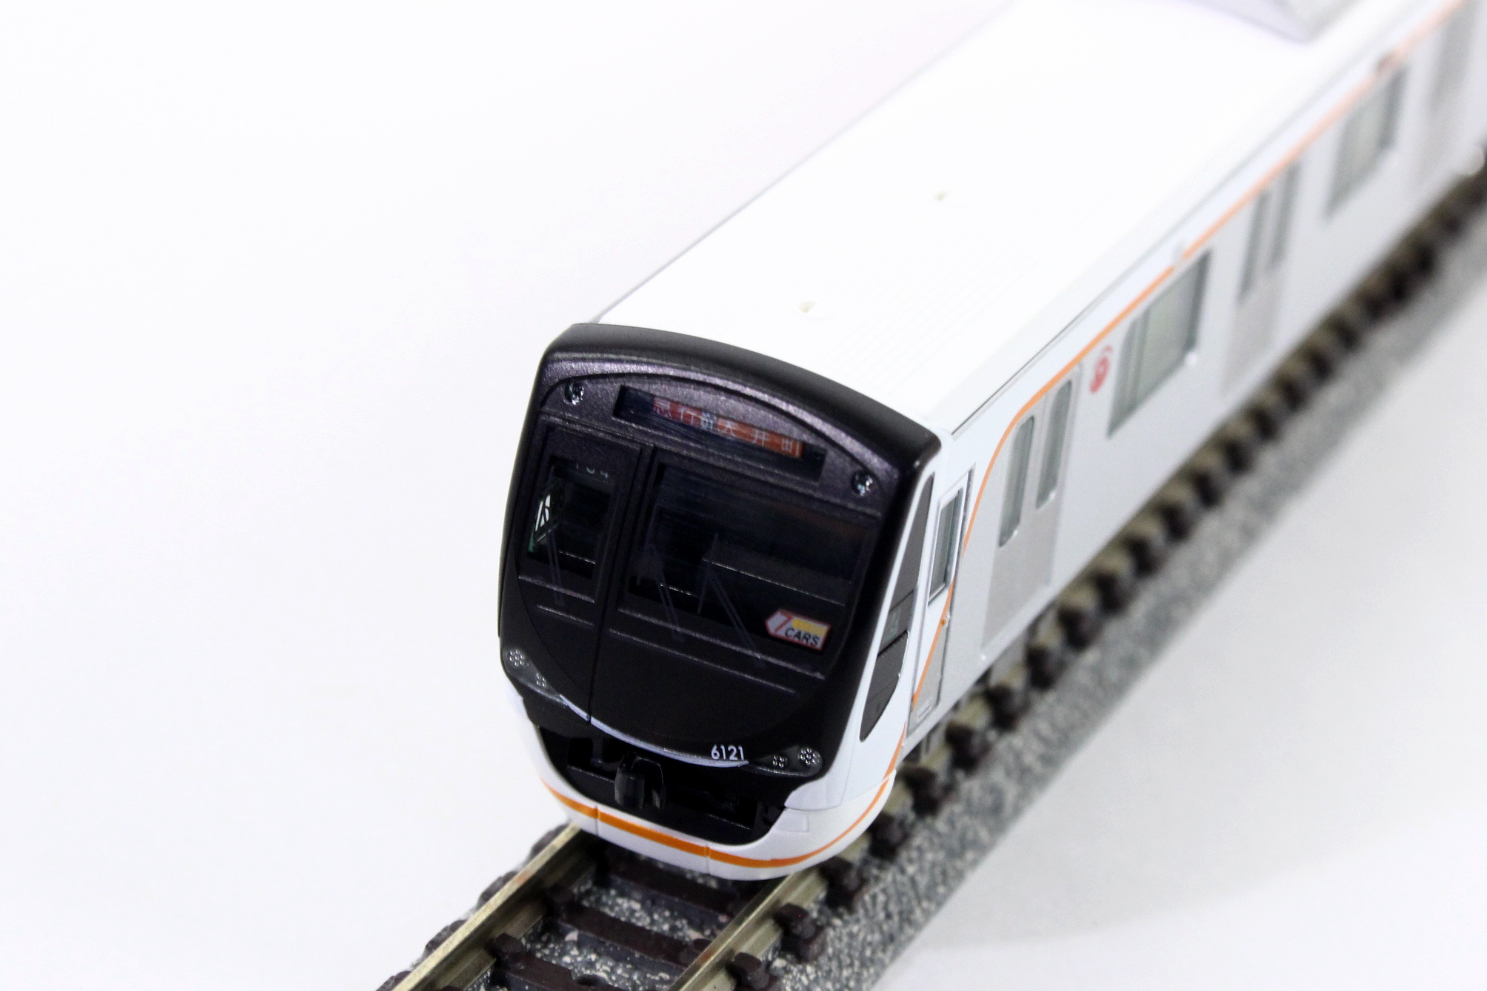 グリーンマックス 30750 東急6020系 (大井町線) 7両セット 鉄道模型 N